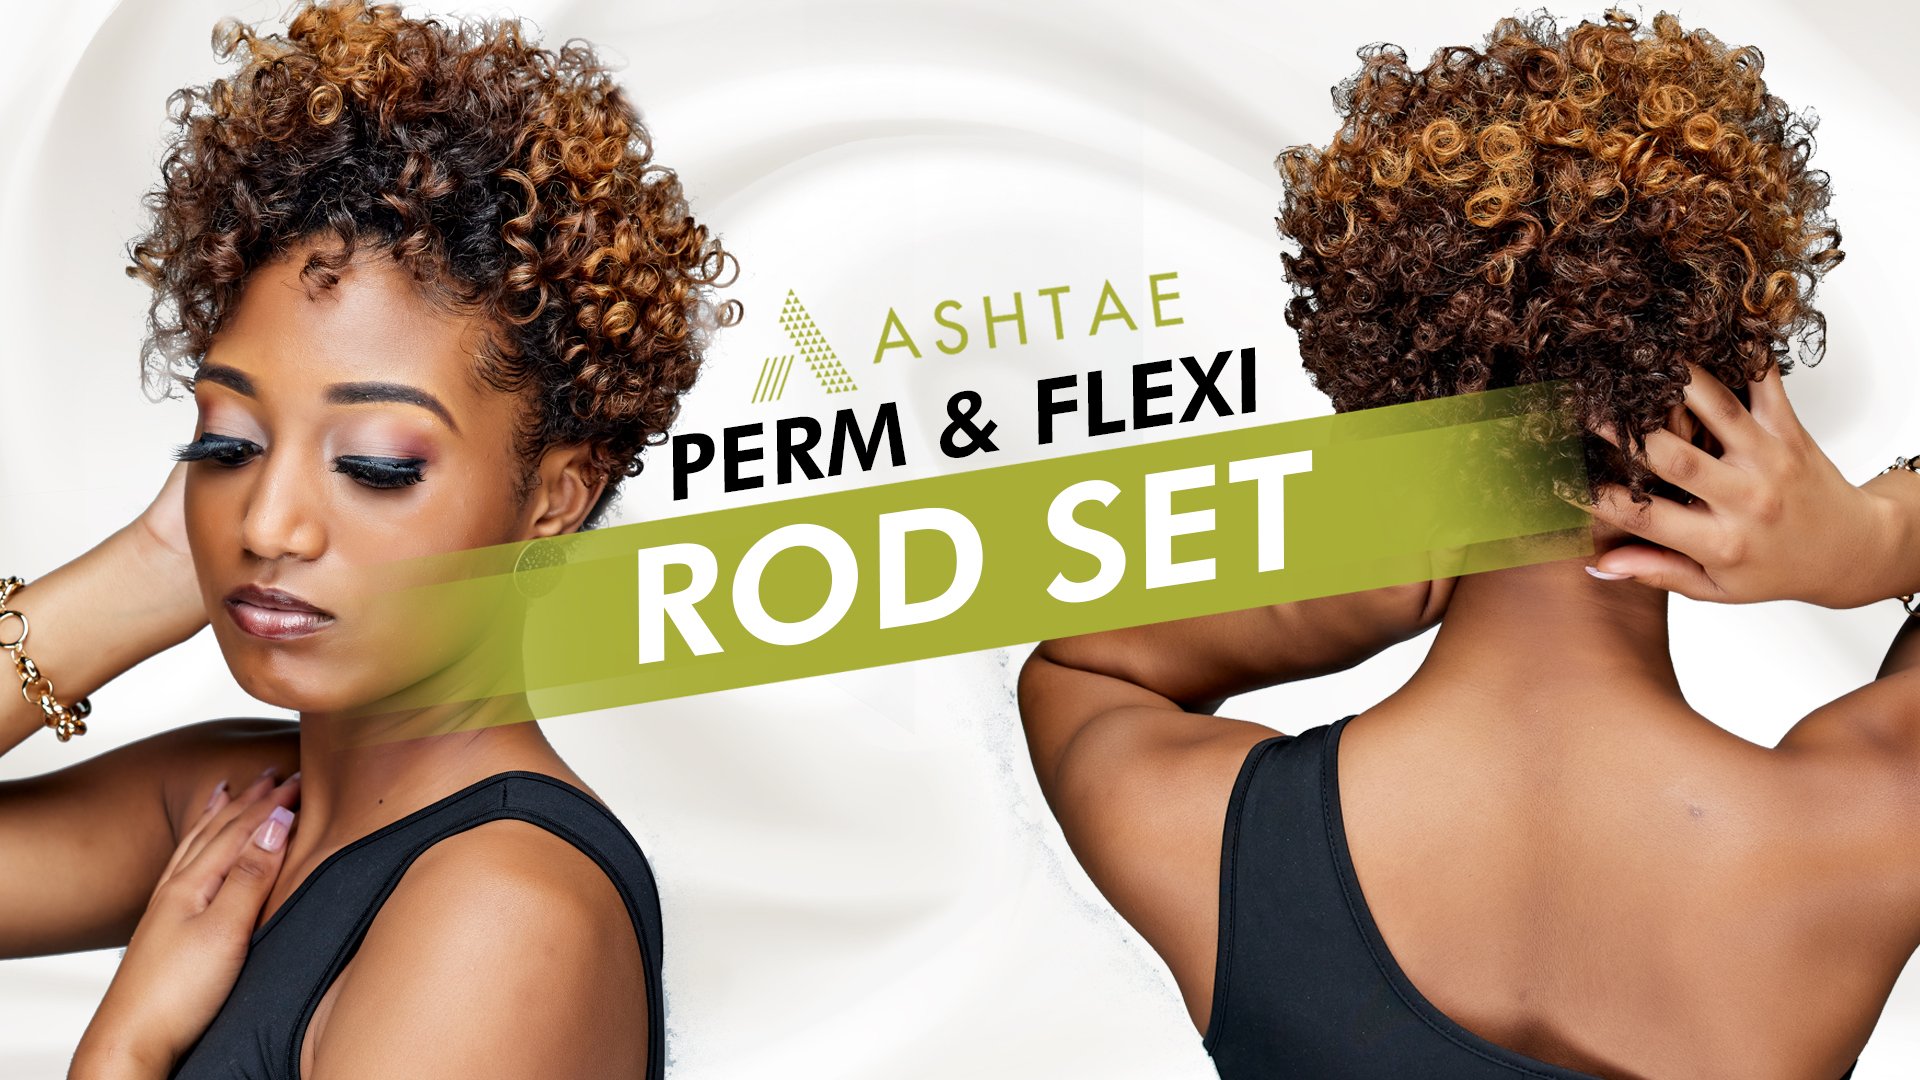 Perm & Flexi Rod Set